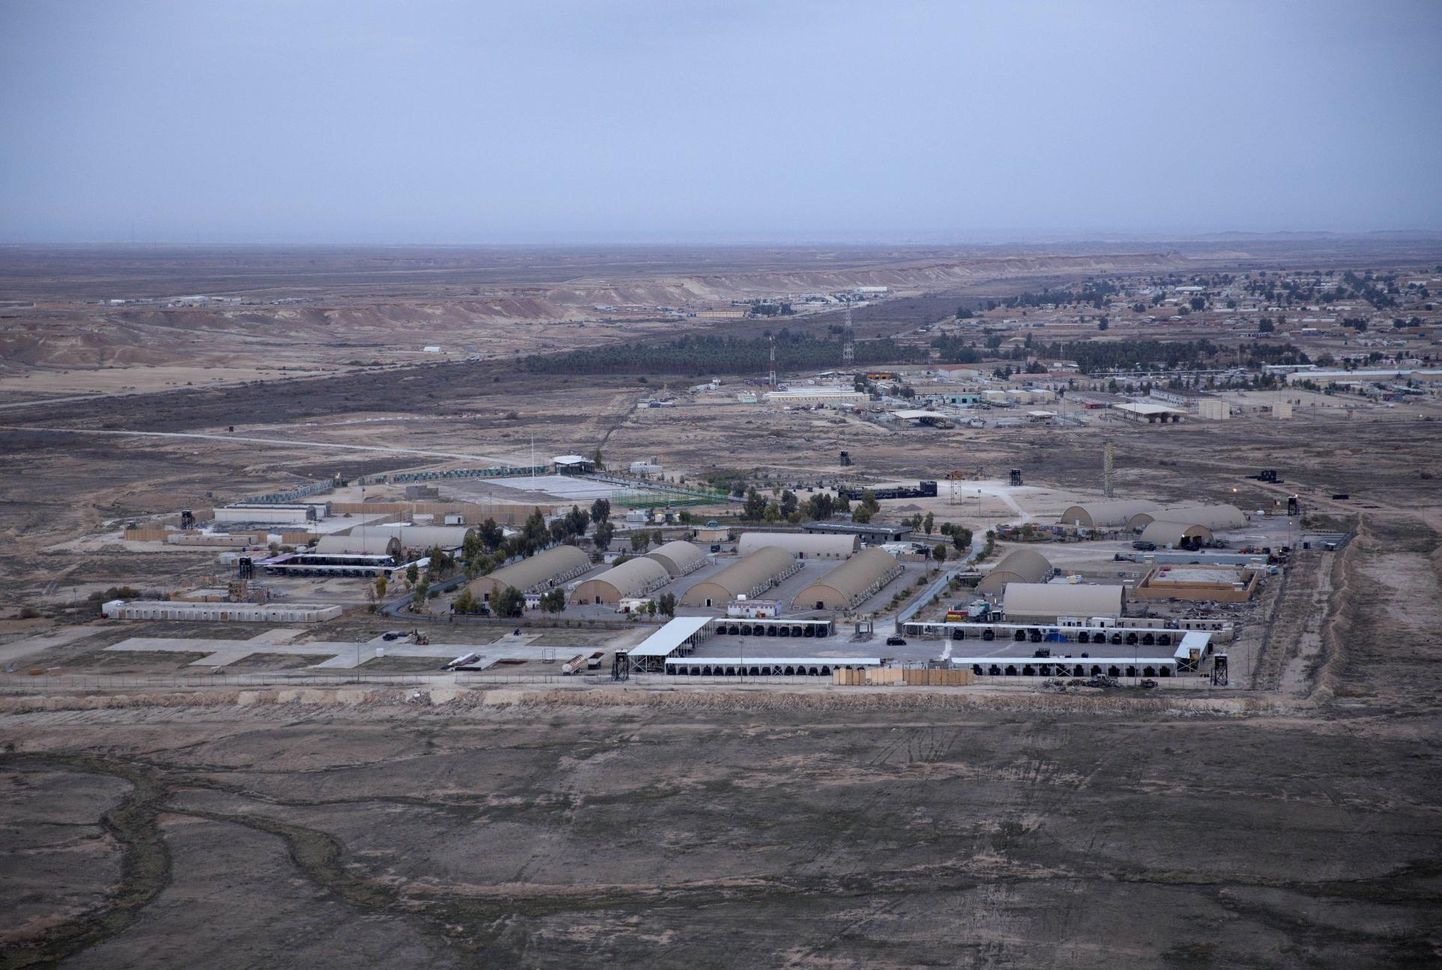 Фотография базы "Айн-аль-Асад" в Ираке, сделанная 29 декабря с вертолета.